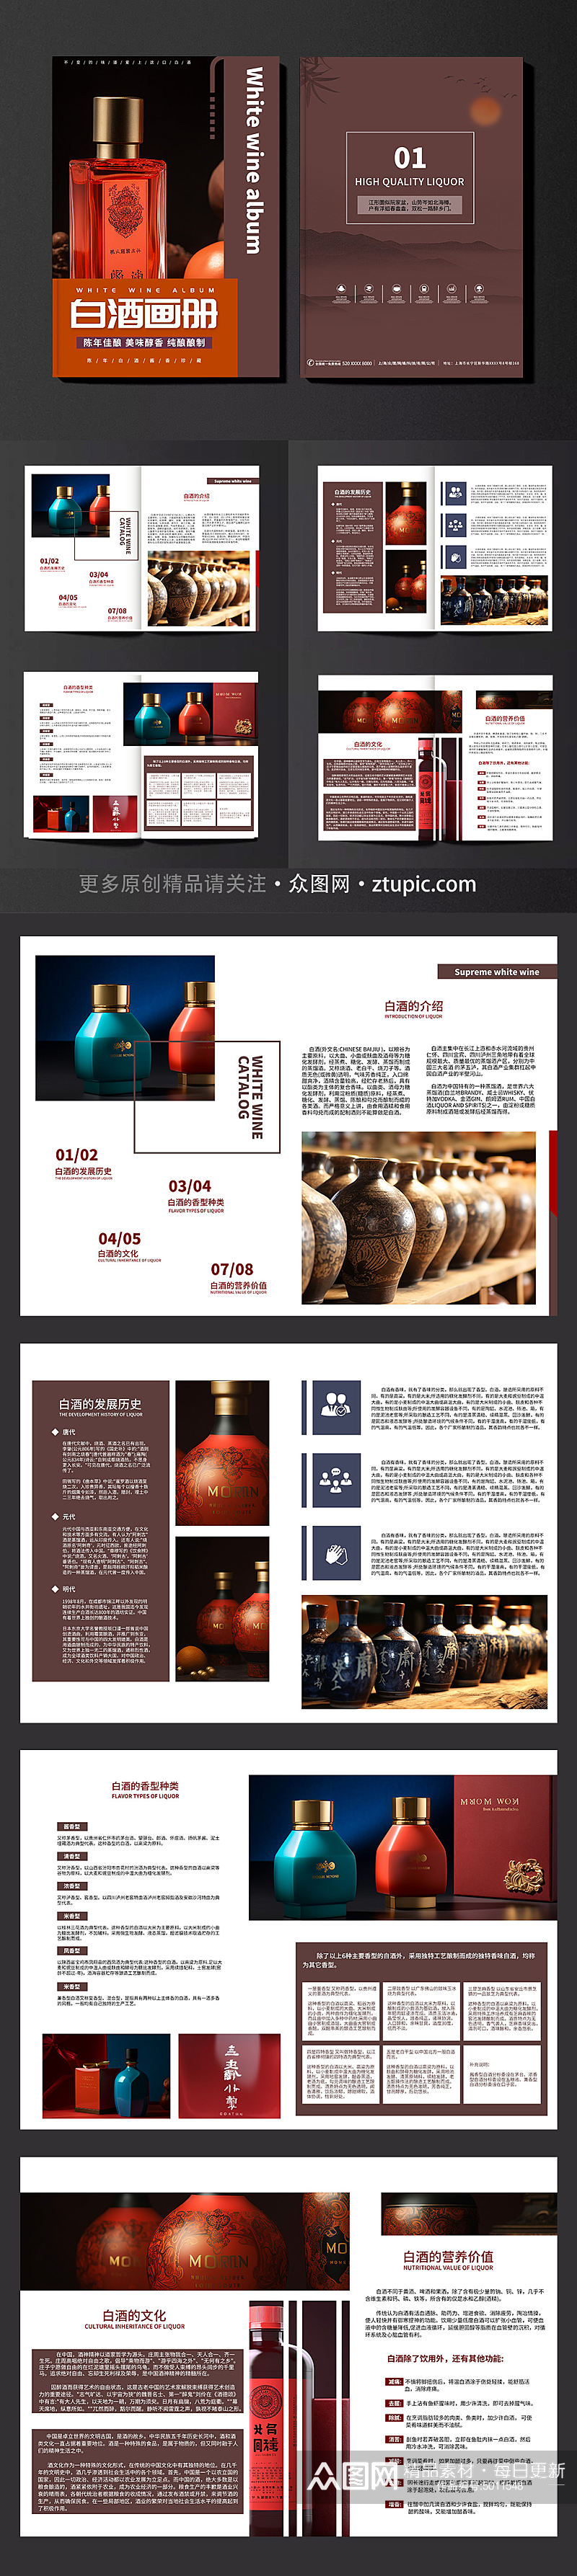 创意酒文化白酒宣传画册素材